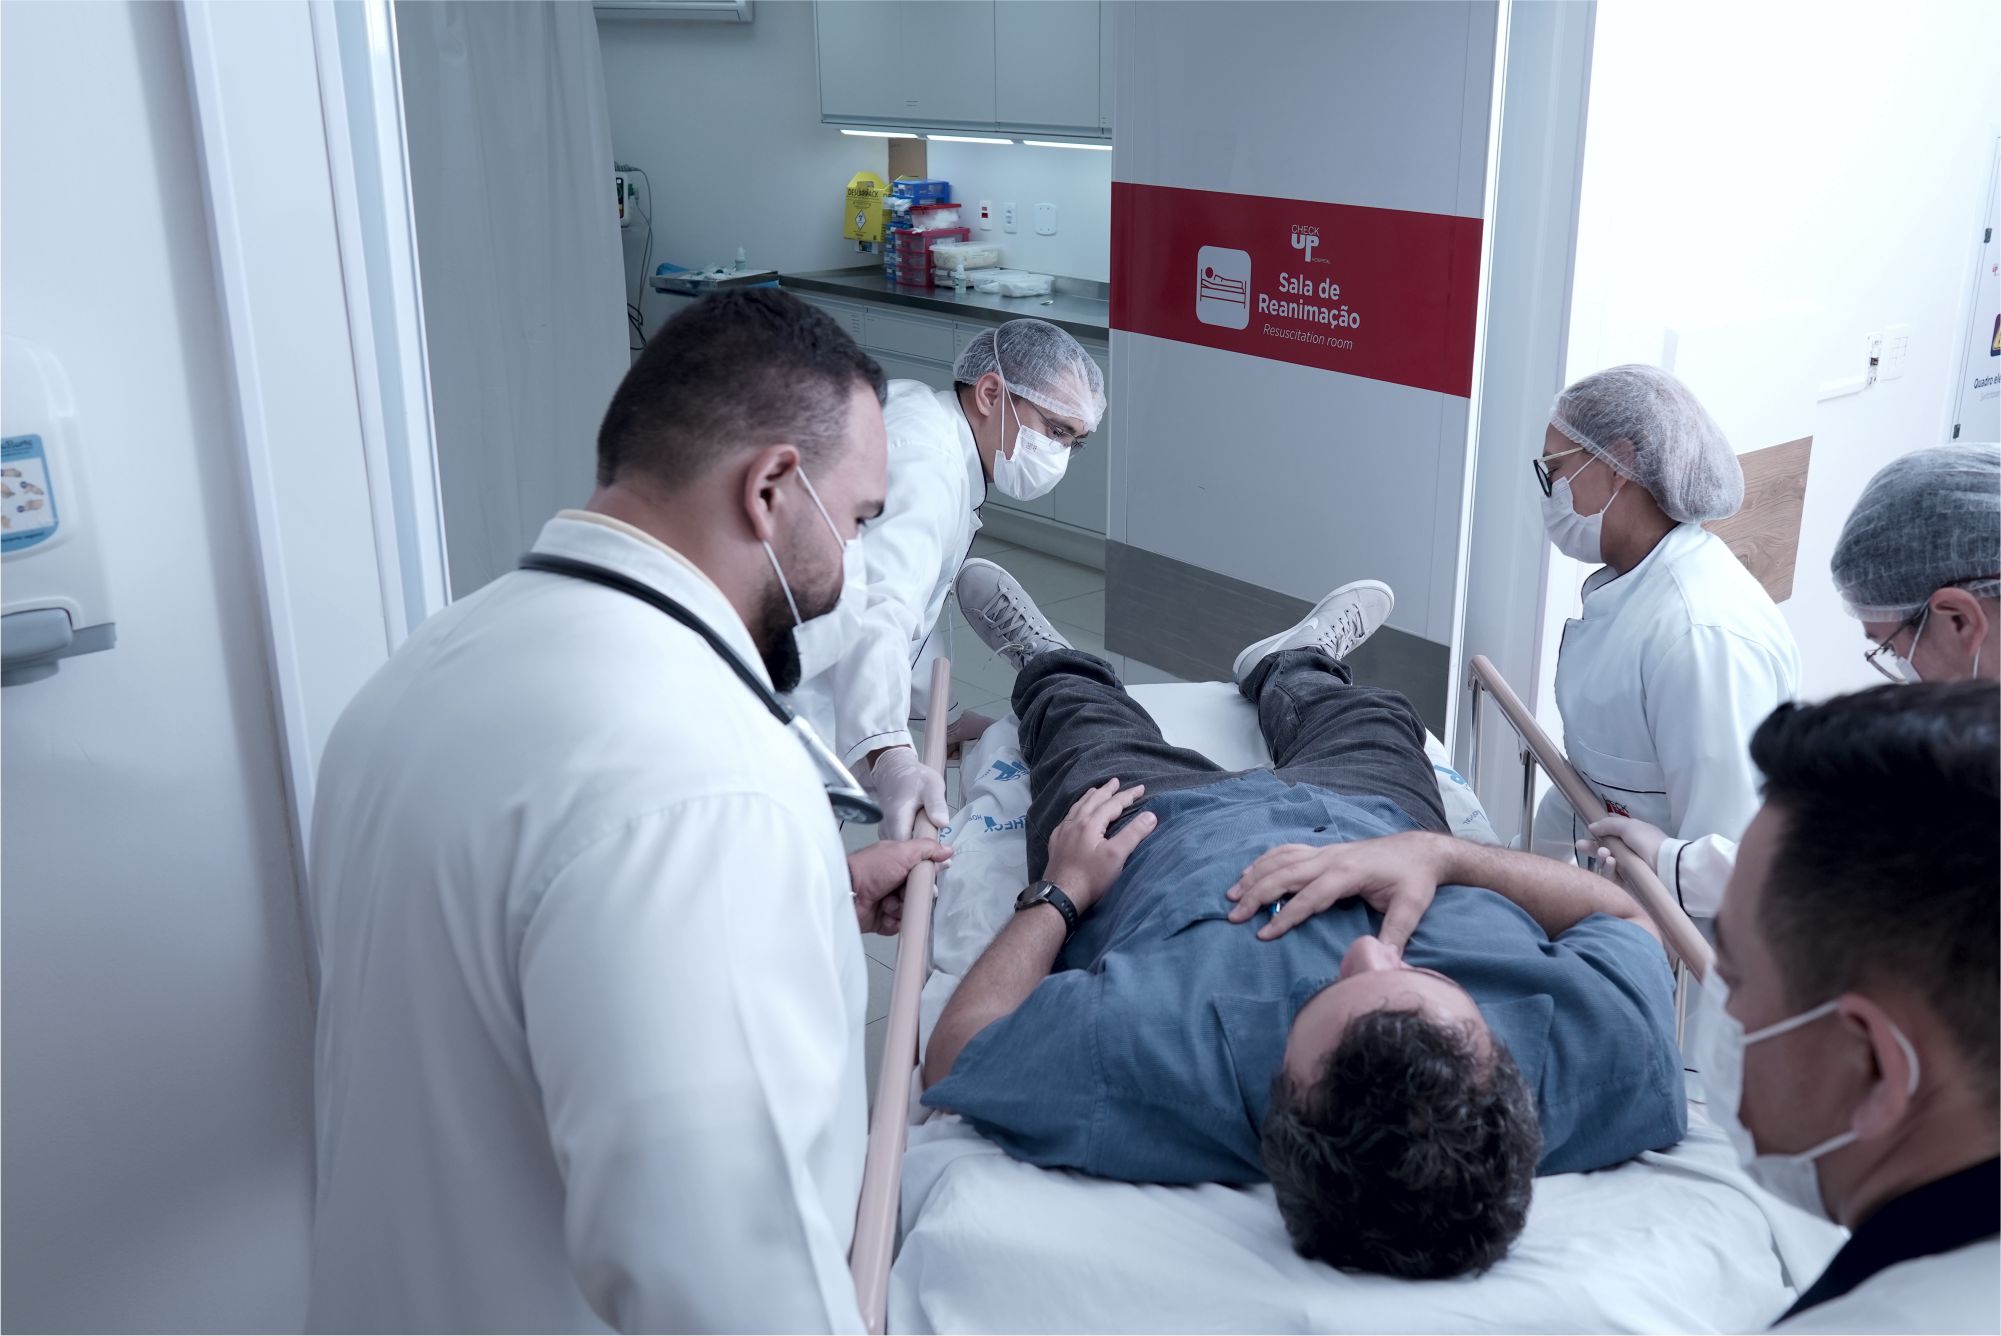 Foto de simulação de atendimento de emergência para caso de paciente com pico hipertensivo, no Pronto Atendimento de Emergência do Check Up Hospital.